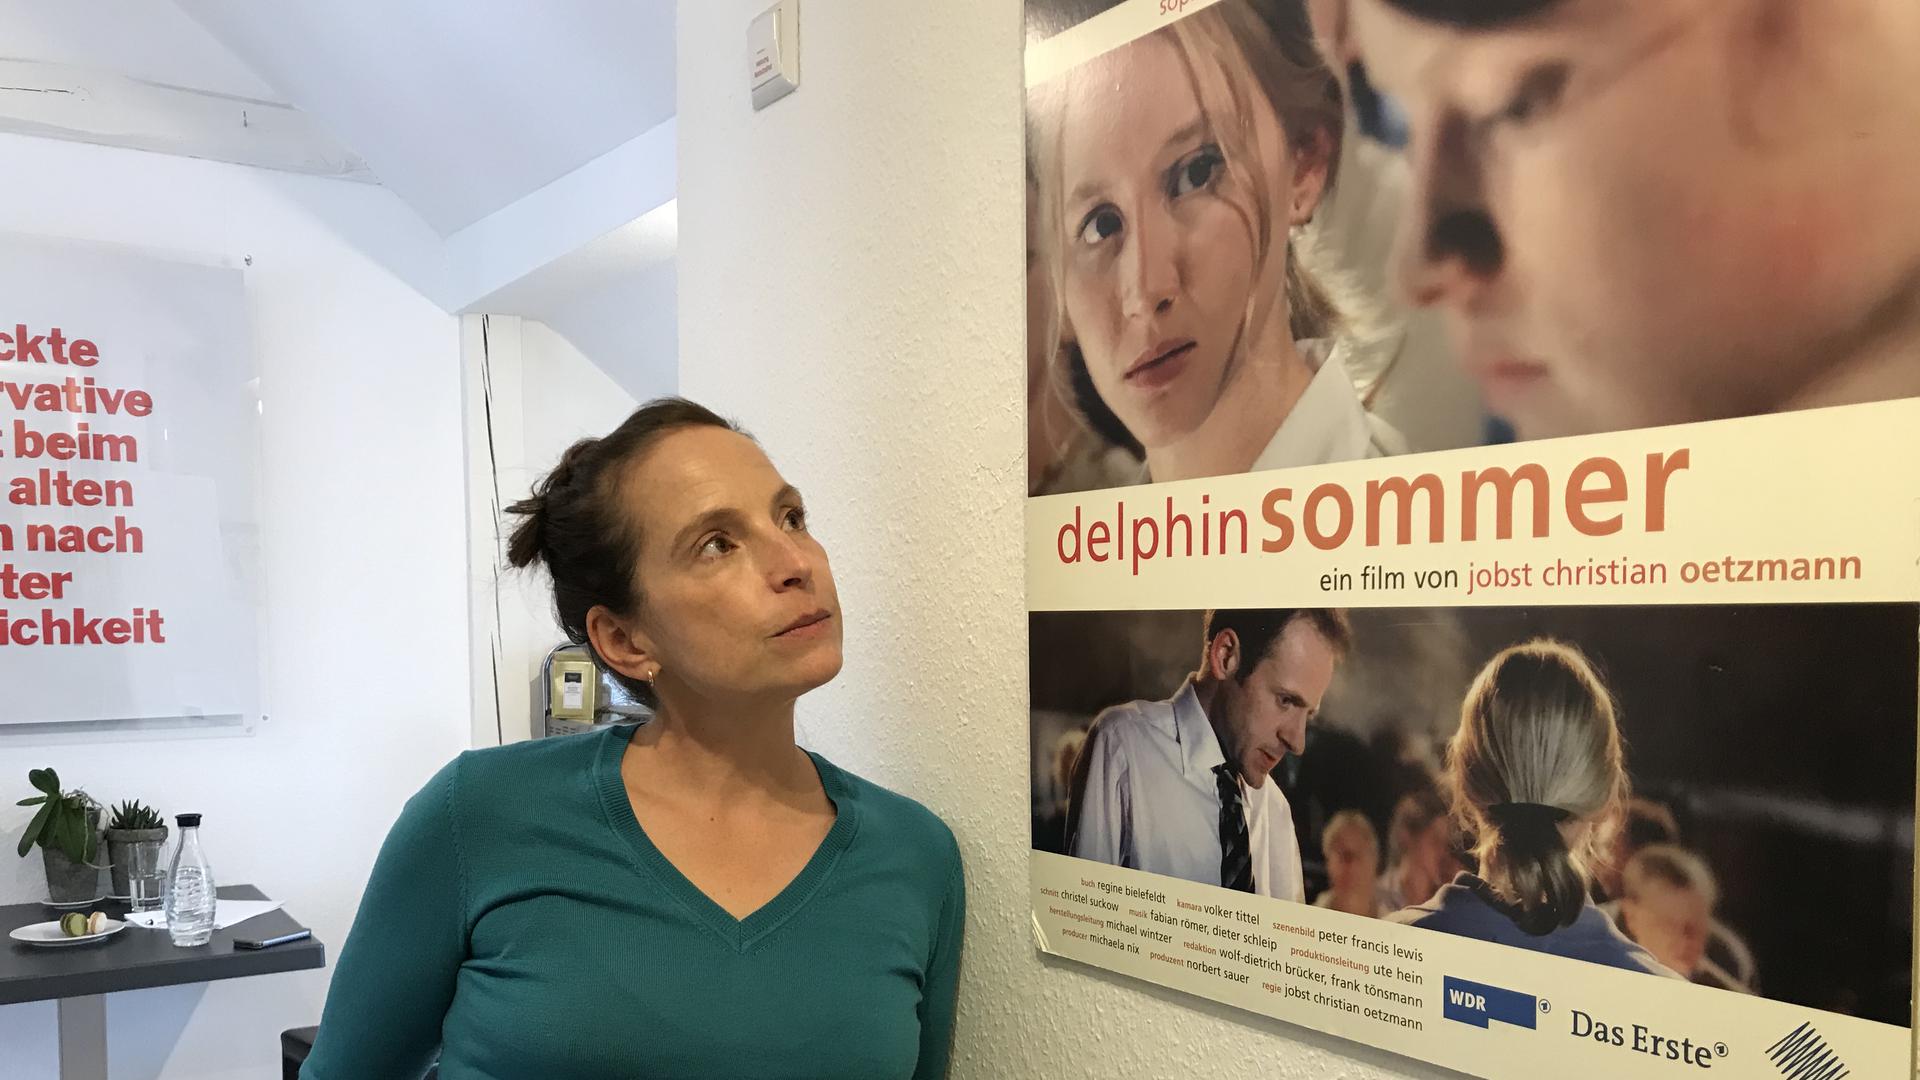 Die Drehbuchautorin Regine Bielefeldt aus Baden-Baden steht vor einem Filmplakat von Delphinsommer.